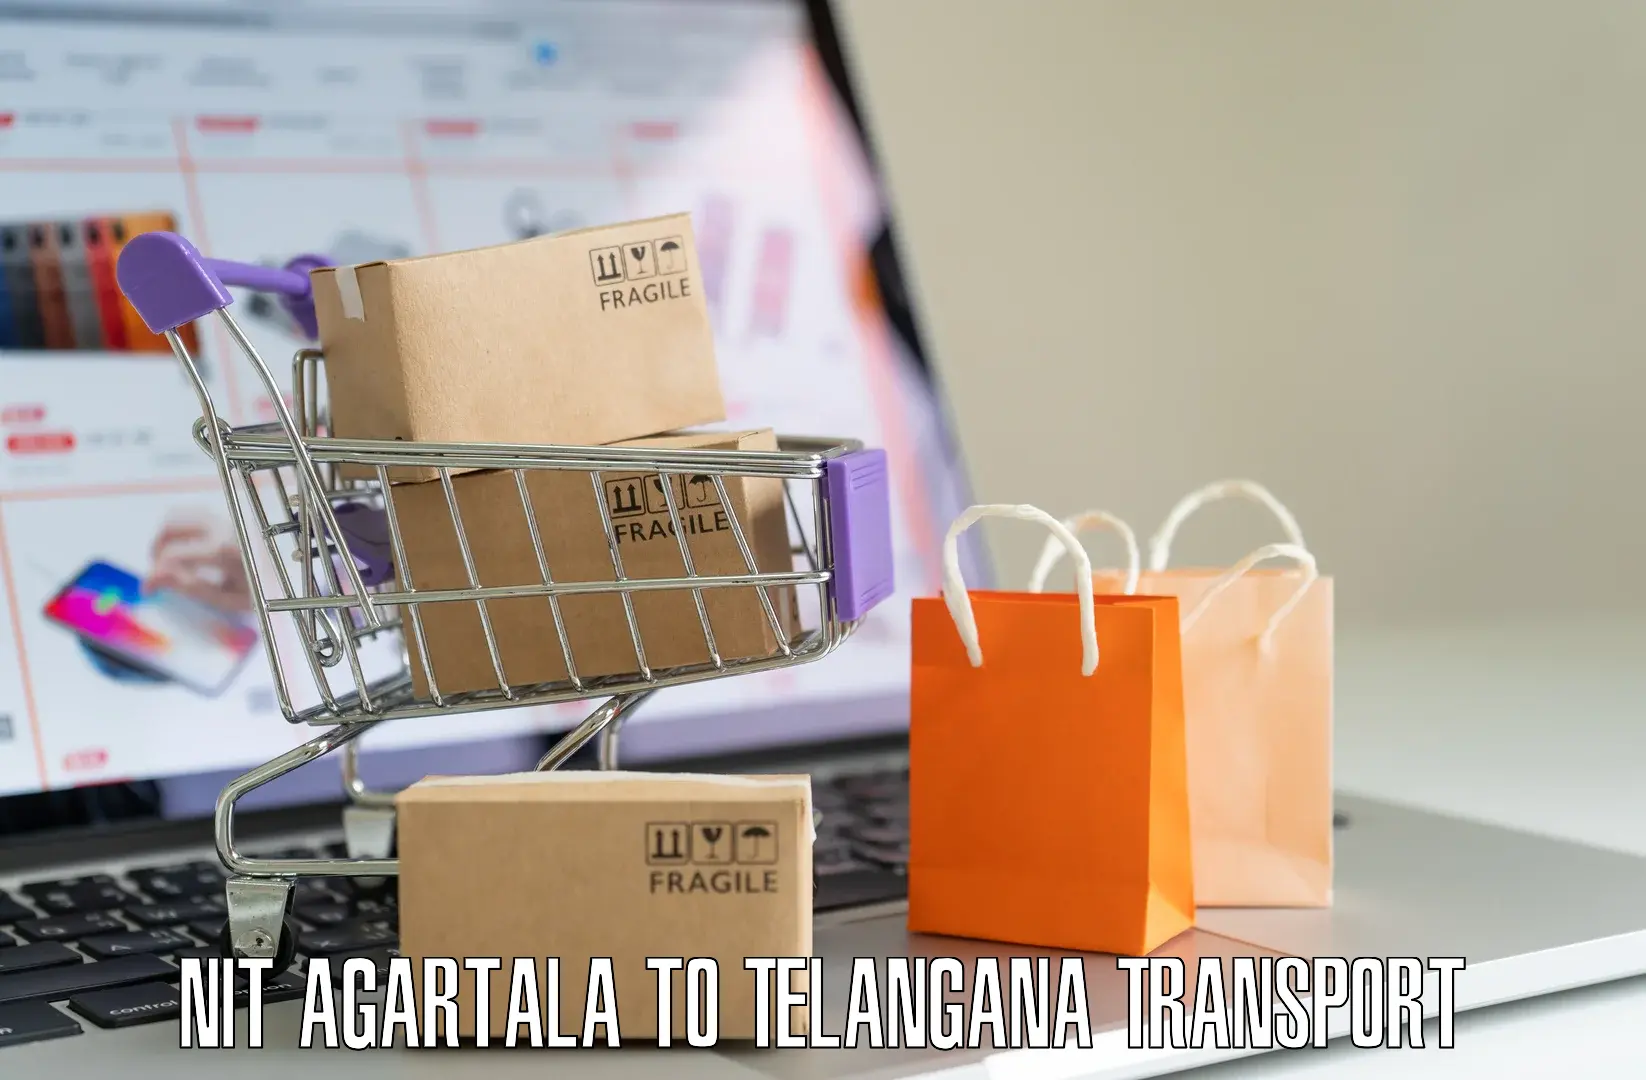 Transport in sharing NIT Agartala to Hanamkonda